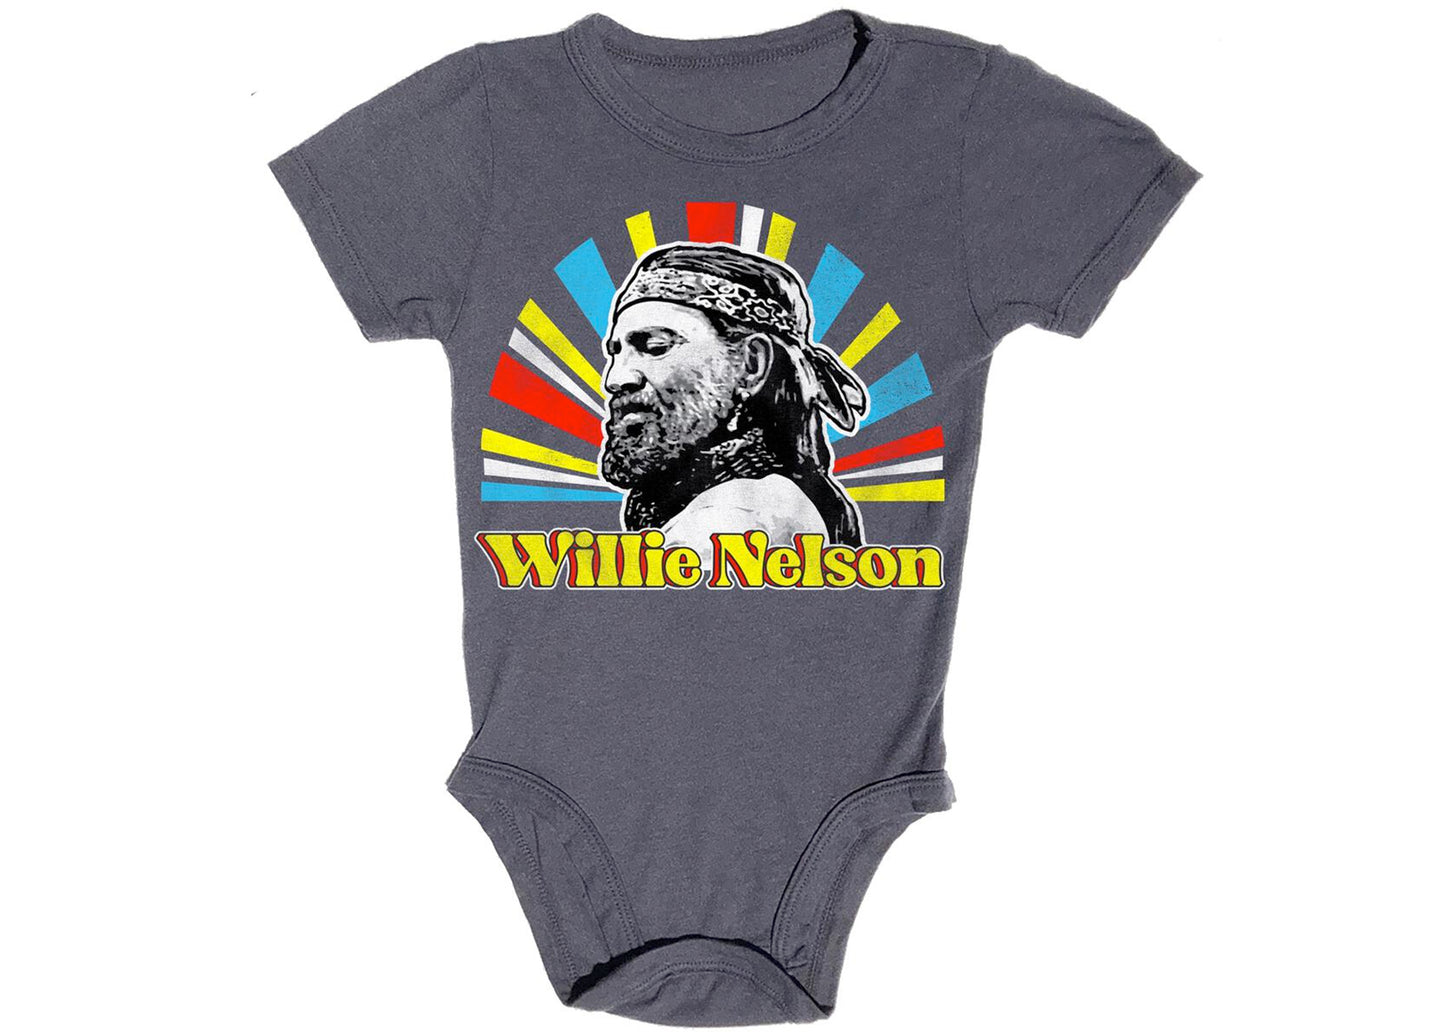 Willie Nelson Baby Onesie in Vintage Black